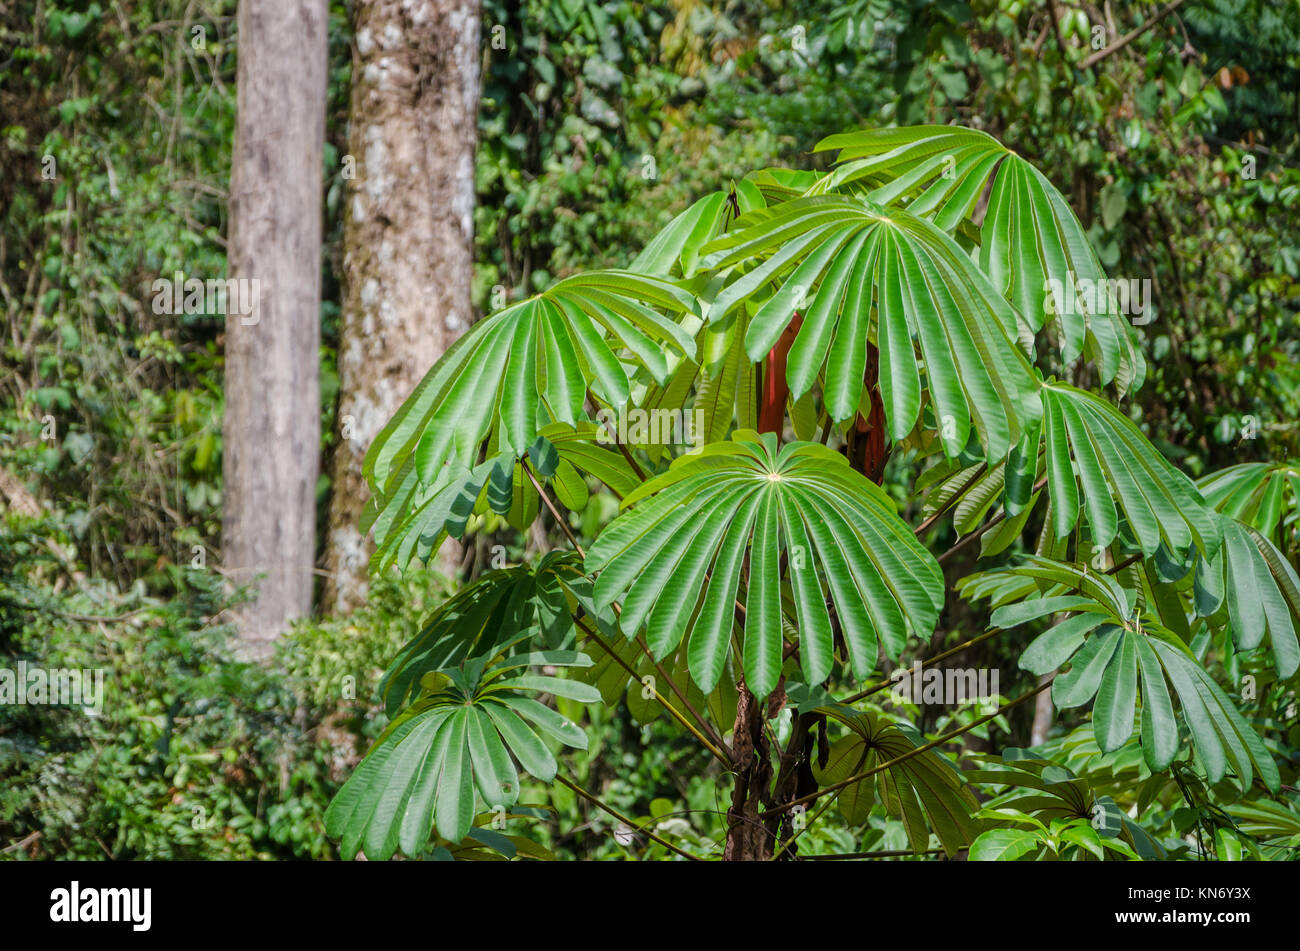 Exotische Pflanze mit üppigen grünen Laub wächst im Regenwald von Nigeria,  Afrika Stockfotografie - Alamy